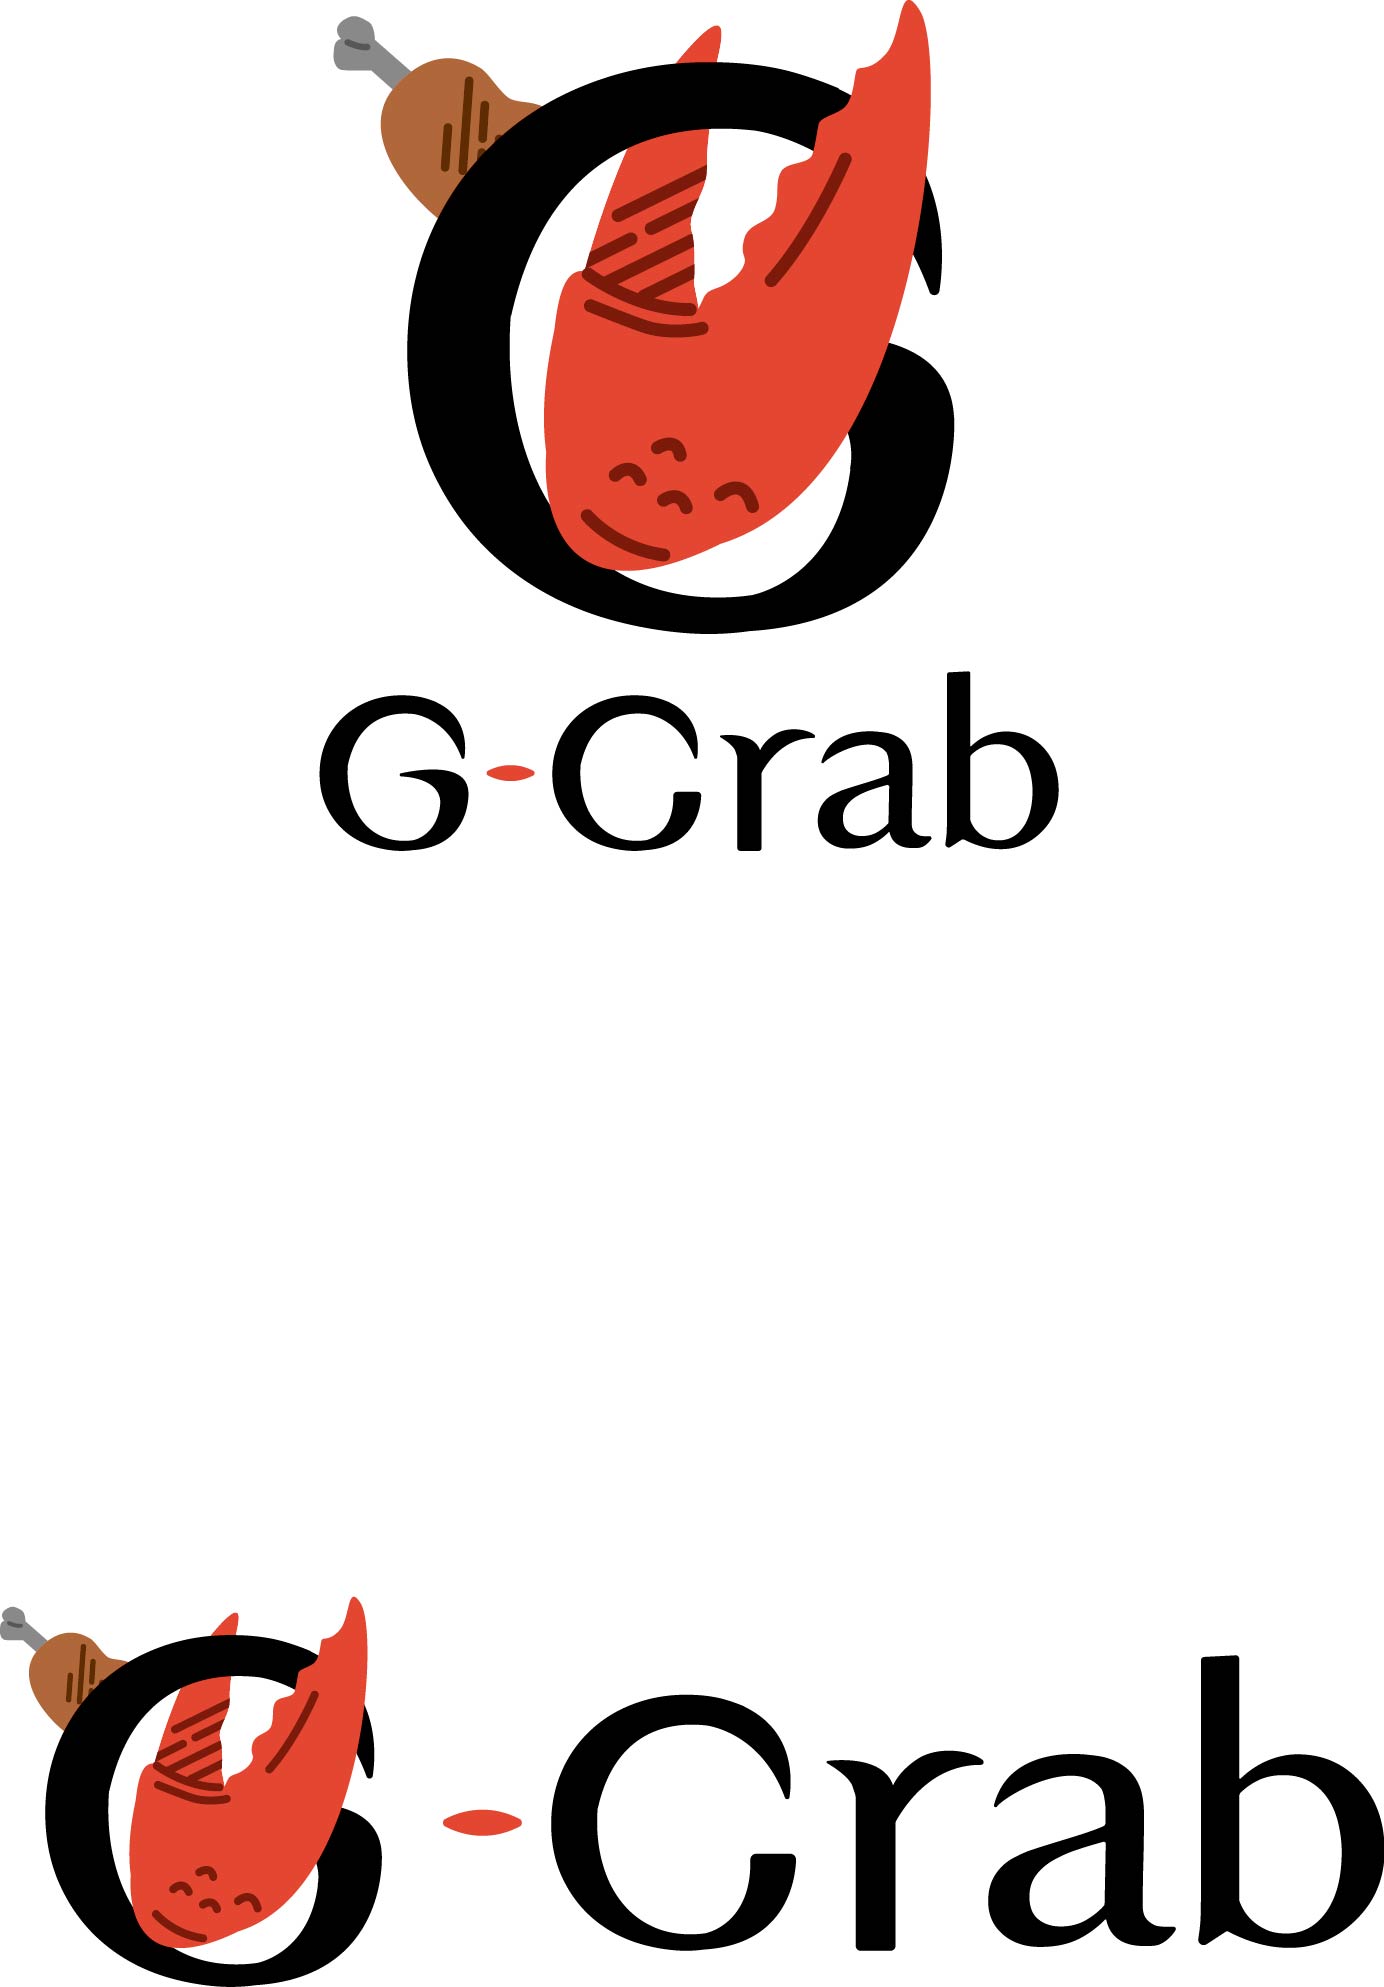 Nhà hàng G-Crab (sắp khai trương)